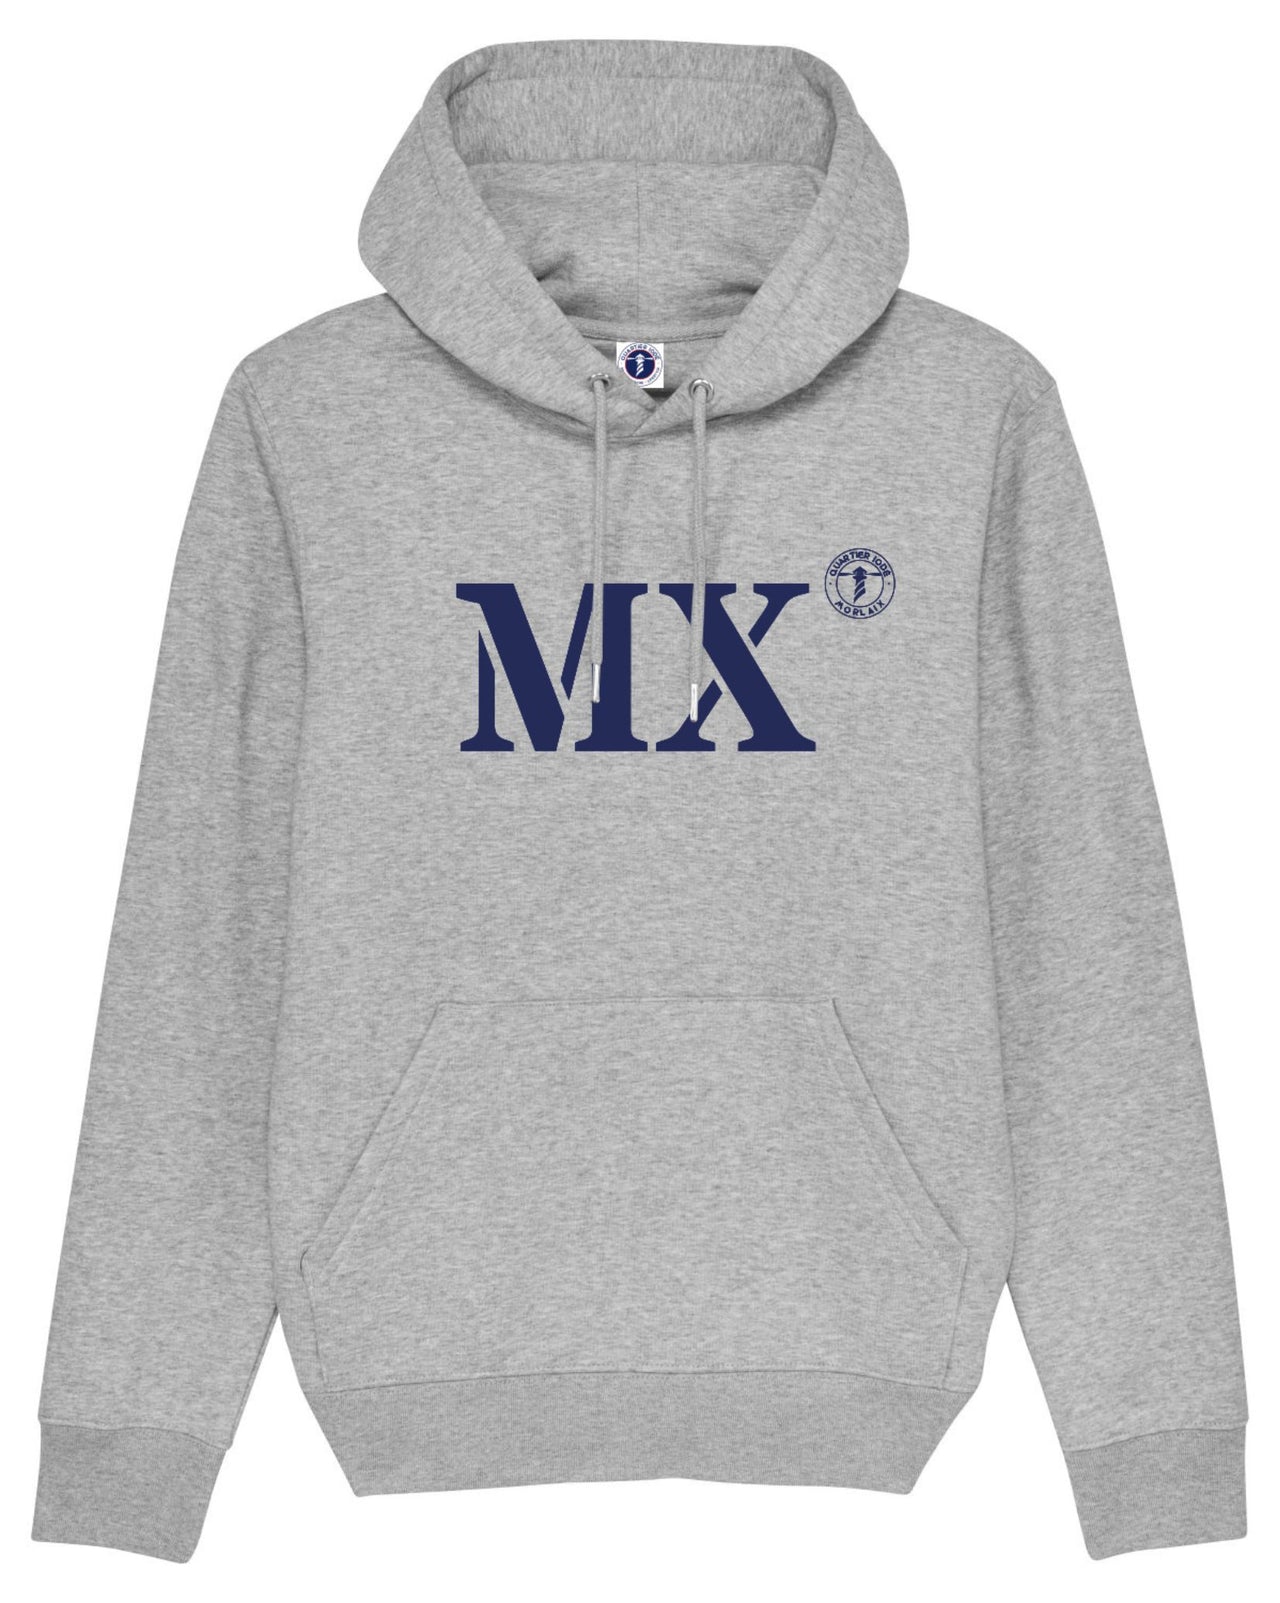 Porter fièrement votre port d'attache MX pour Morlaix (pour hommes et femmes) de la marque Quartier iodé.